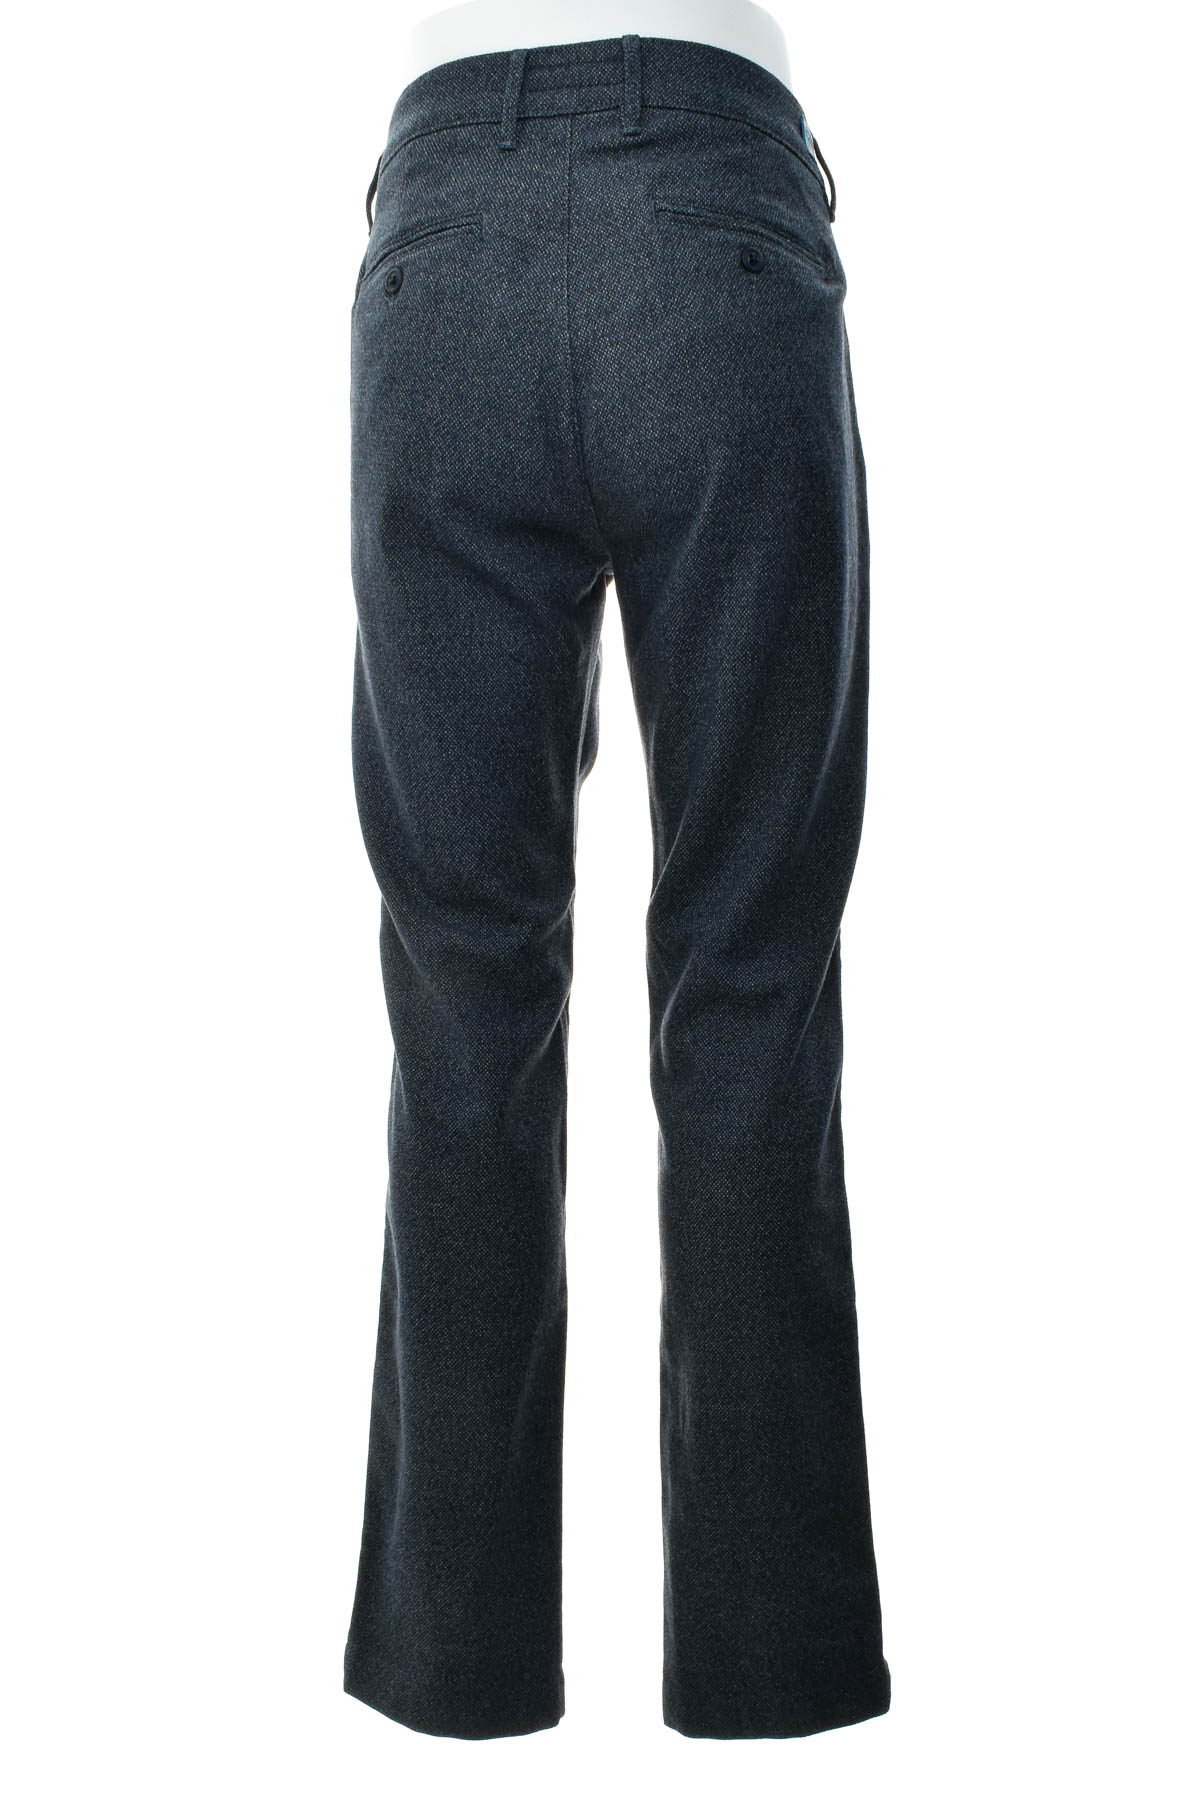 Pantalon pentru bărbați - Birmingham Wear - 1